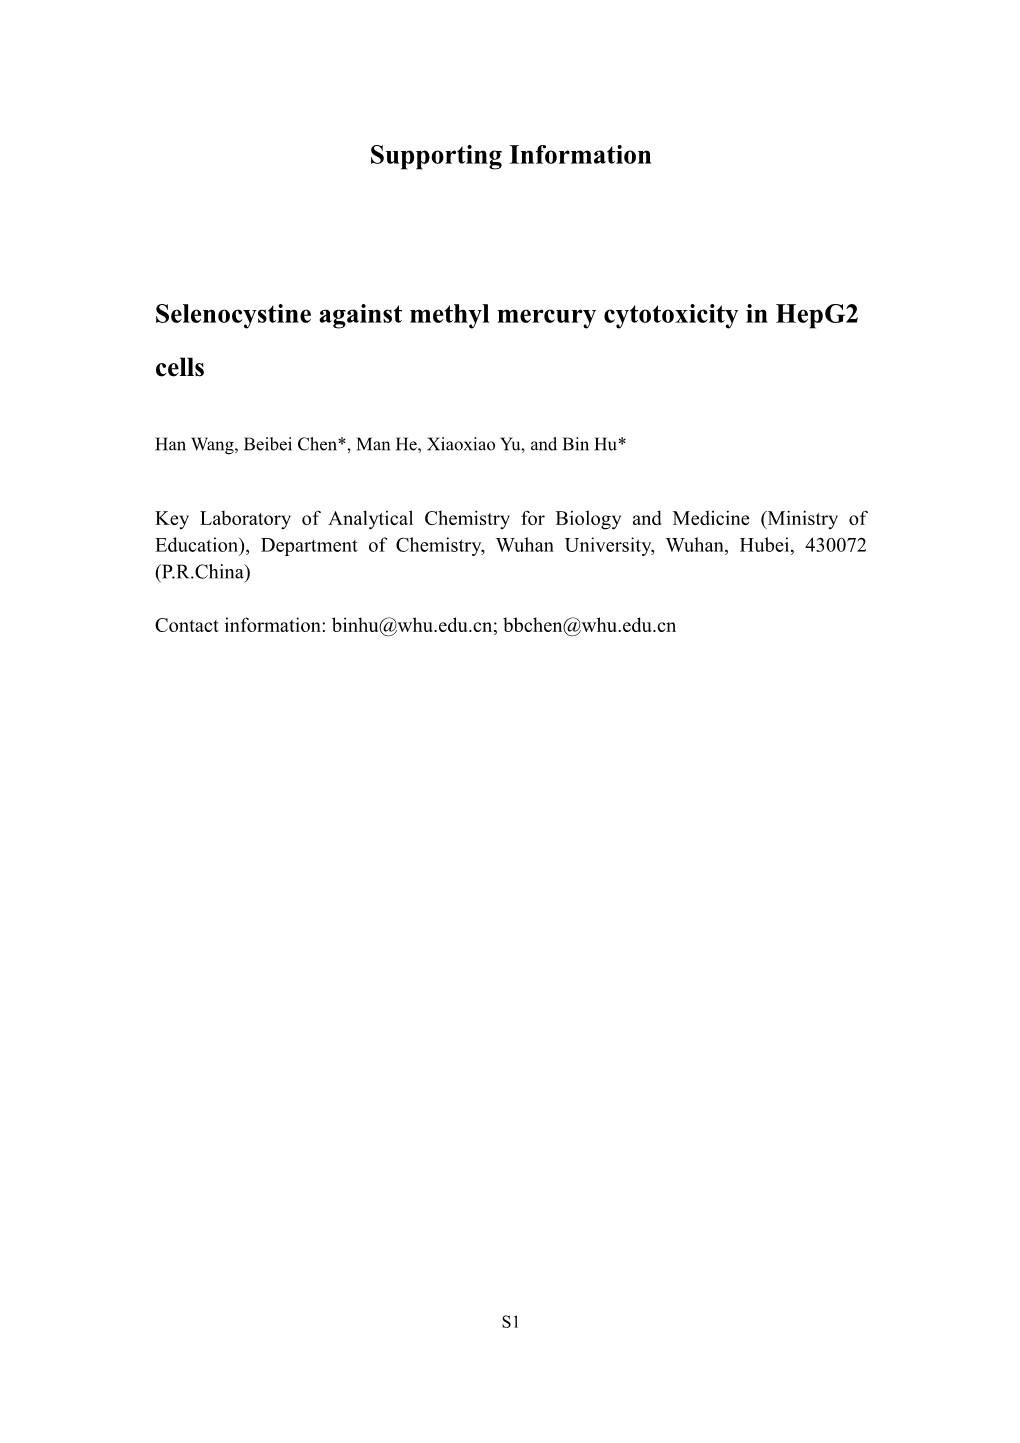 Selenocystine Against Methyl Mercury Cytotoxicity in Hepg2 Cells